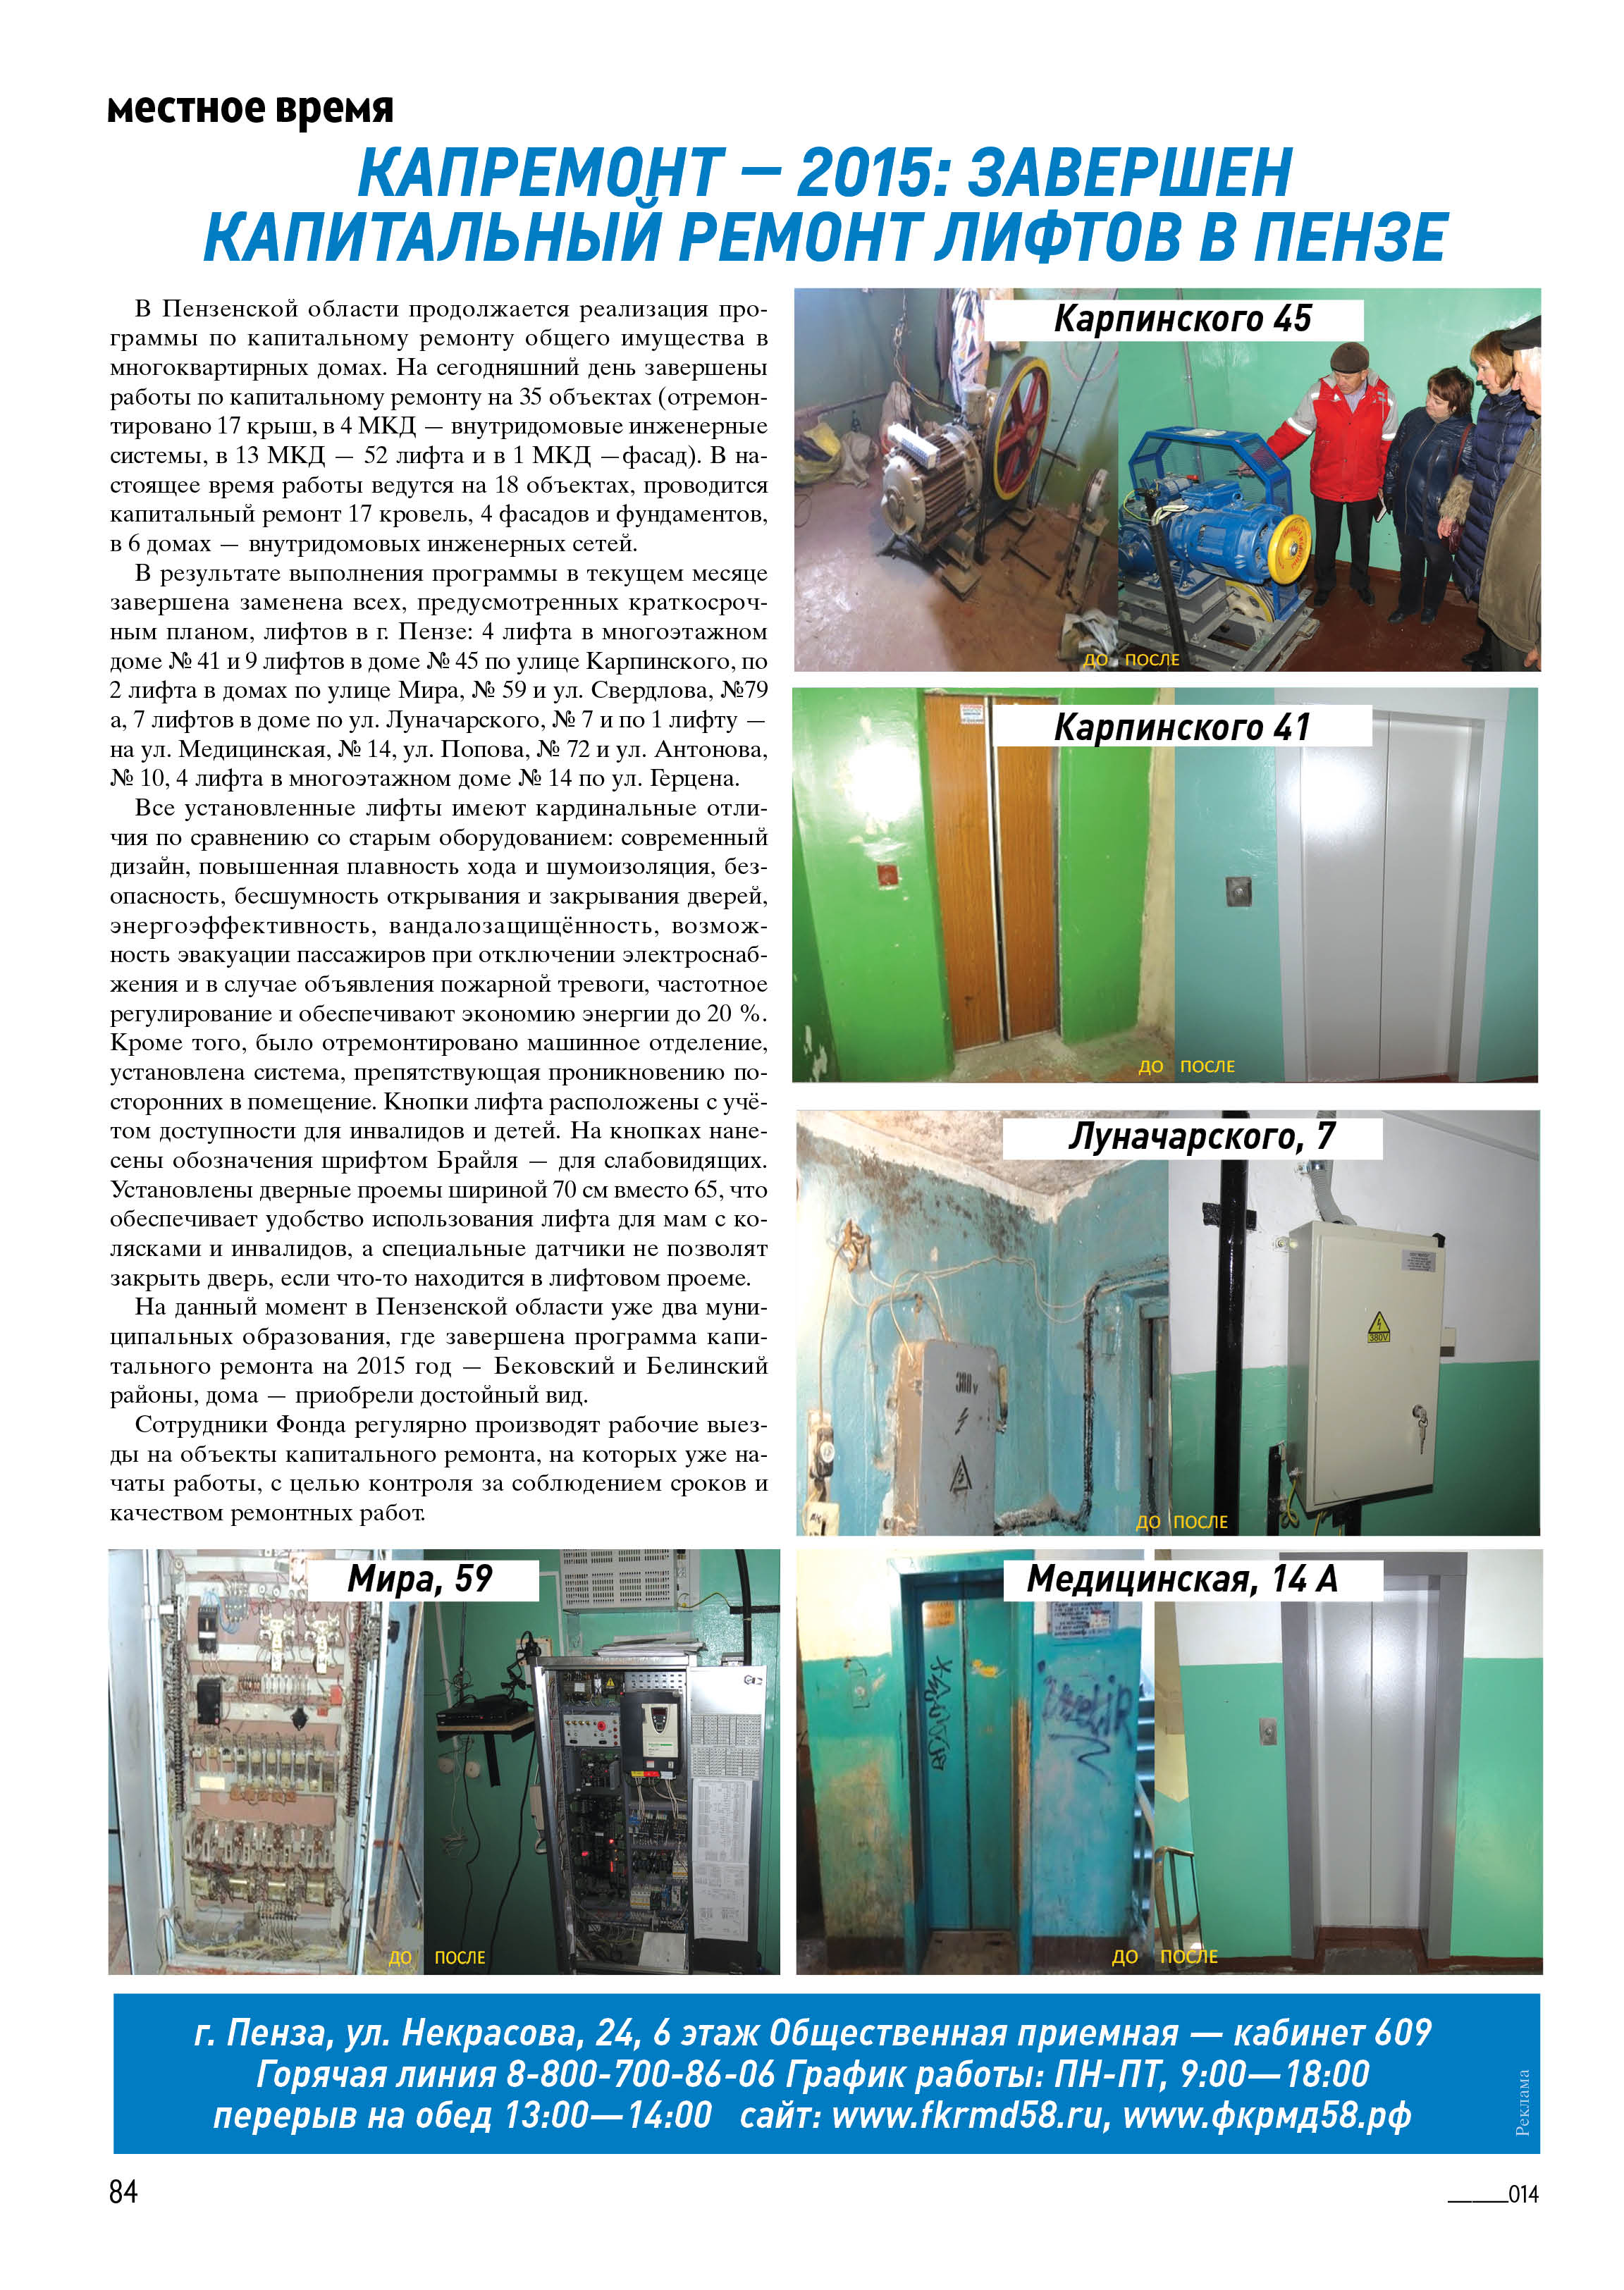 капремонт-2015: завершен капитальный ремонт лифтов в пензе(Телесемь, 28.10.15)